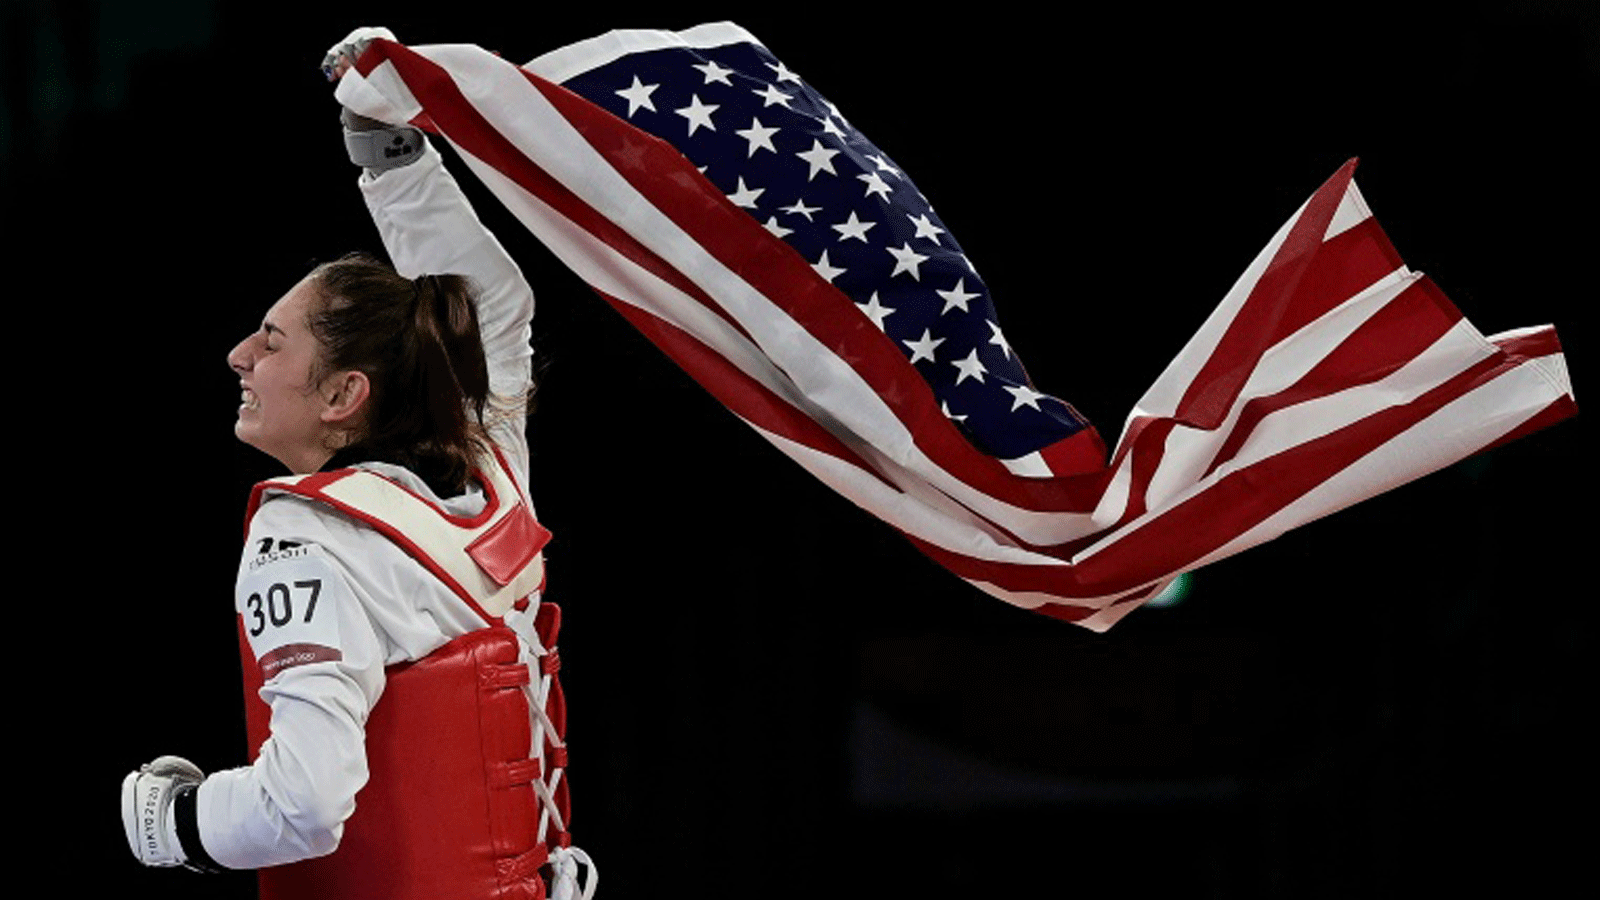 أناستازيا زولوتيك أول أميركية تفوز بميدالية ذهبية في التايكواندو بعد تتويجها بفئة -57 كلغ في أولمبياد طوكيو بتاريخ 25 تموز/يوليو 2021